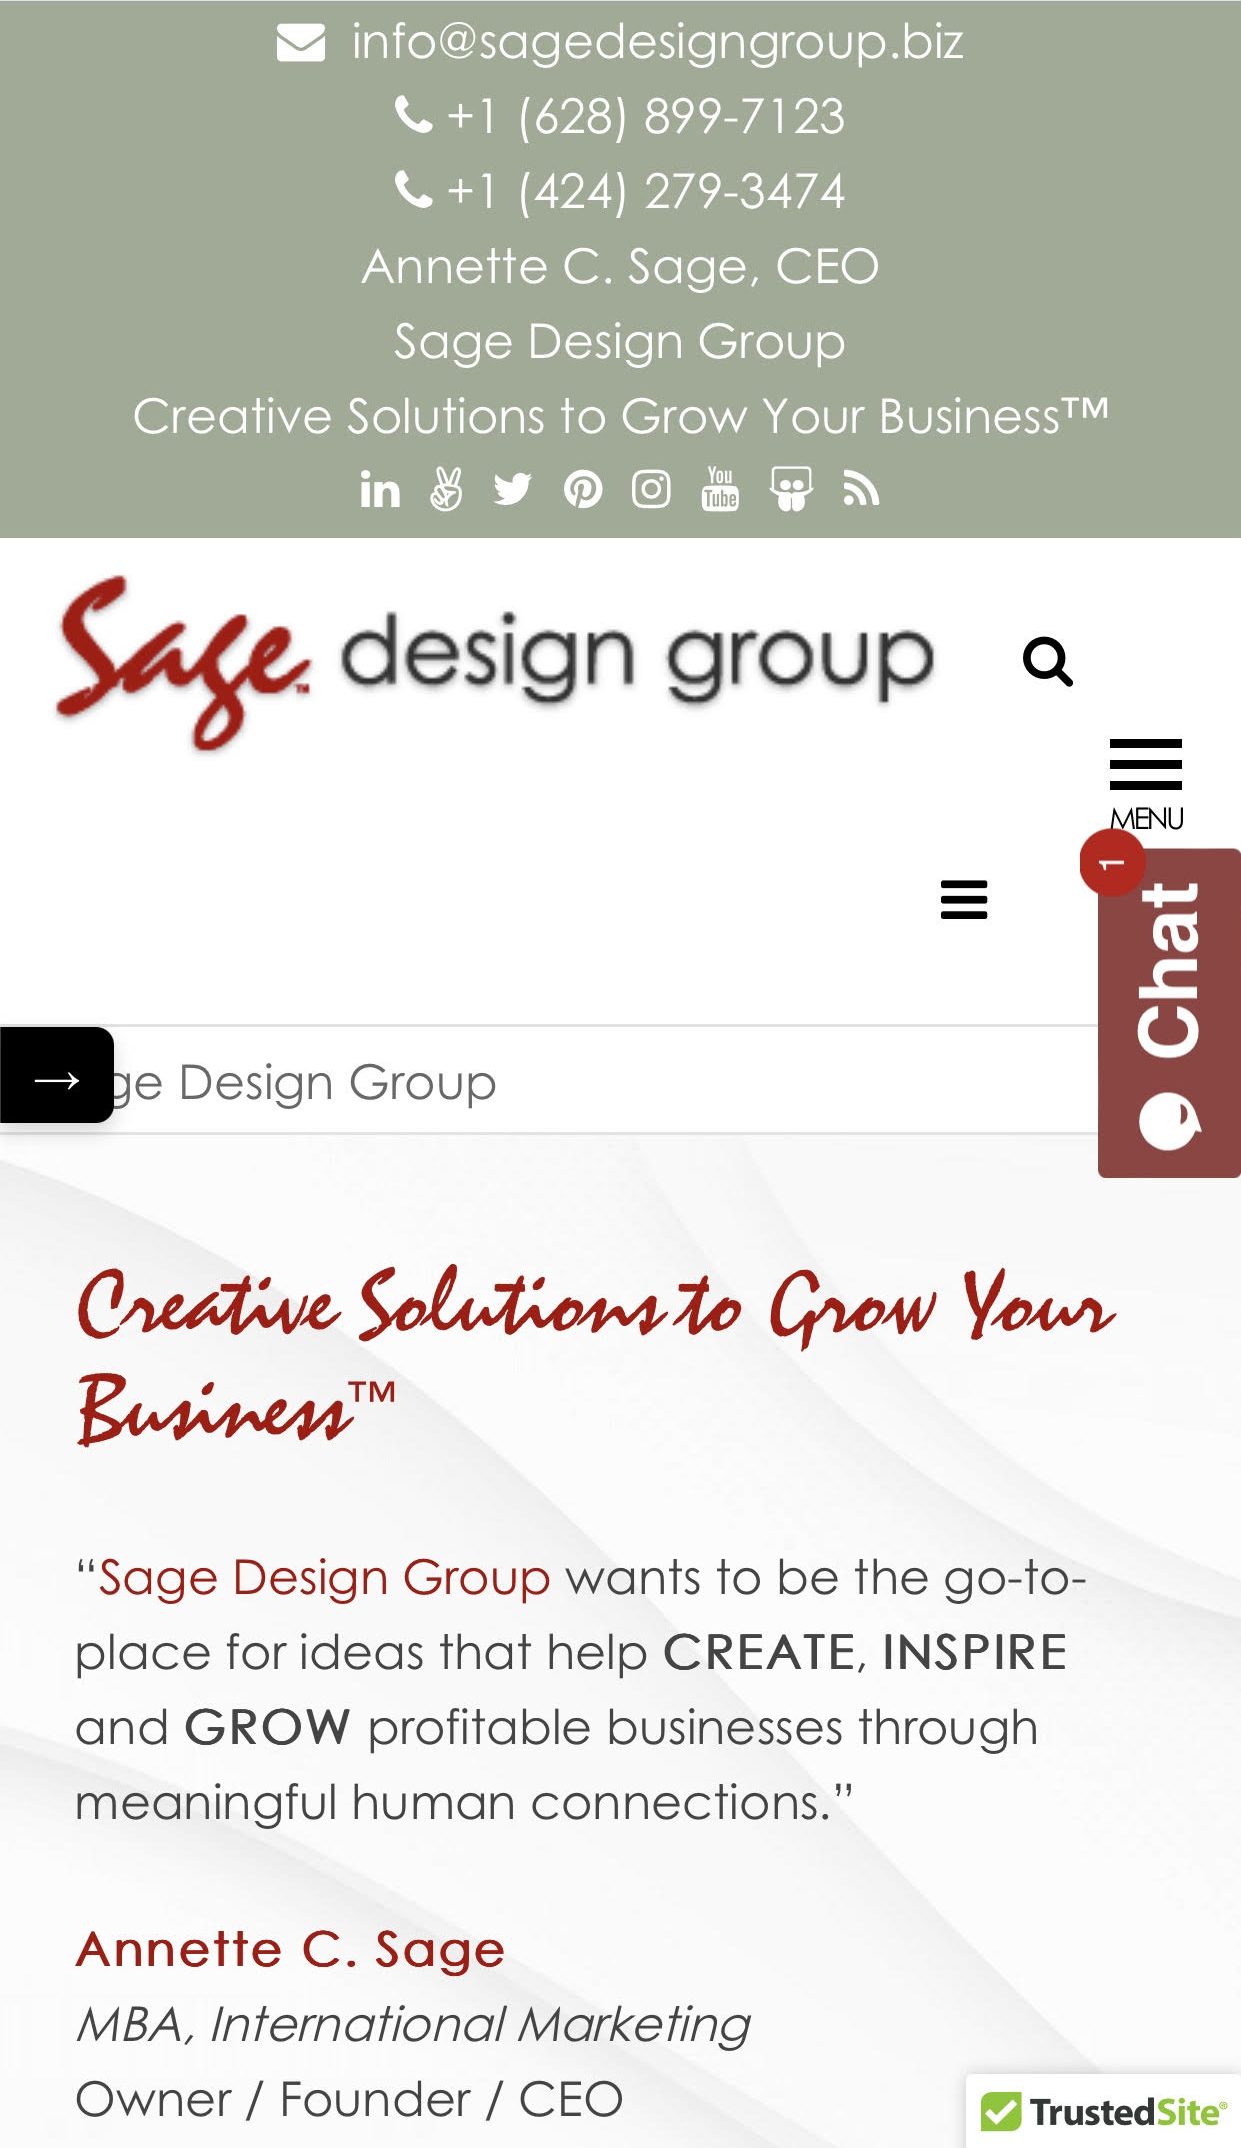 Sage Design Group Mobile App - Sage Design Group Website Design and Development - Annette Sage, CEO - Web Designer